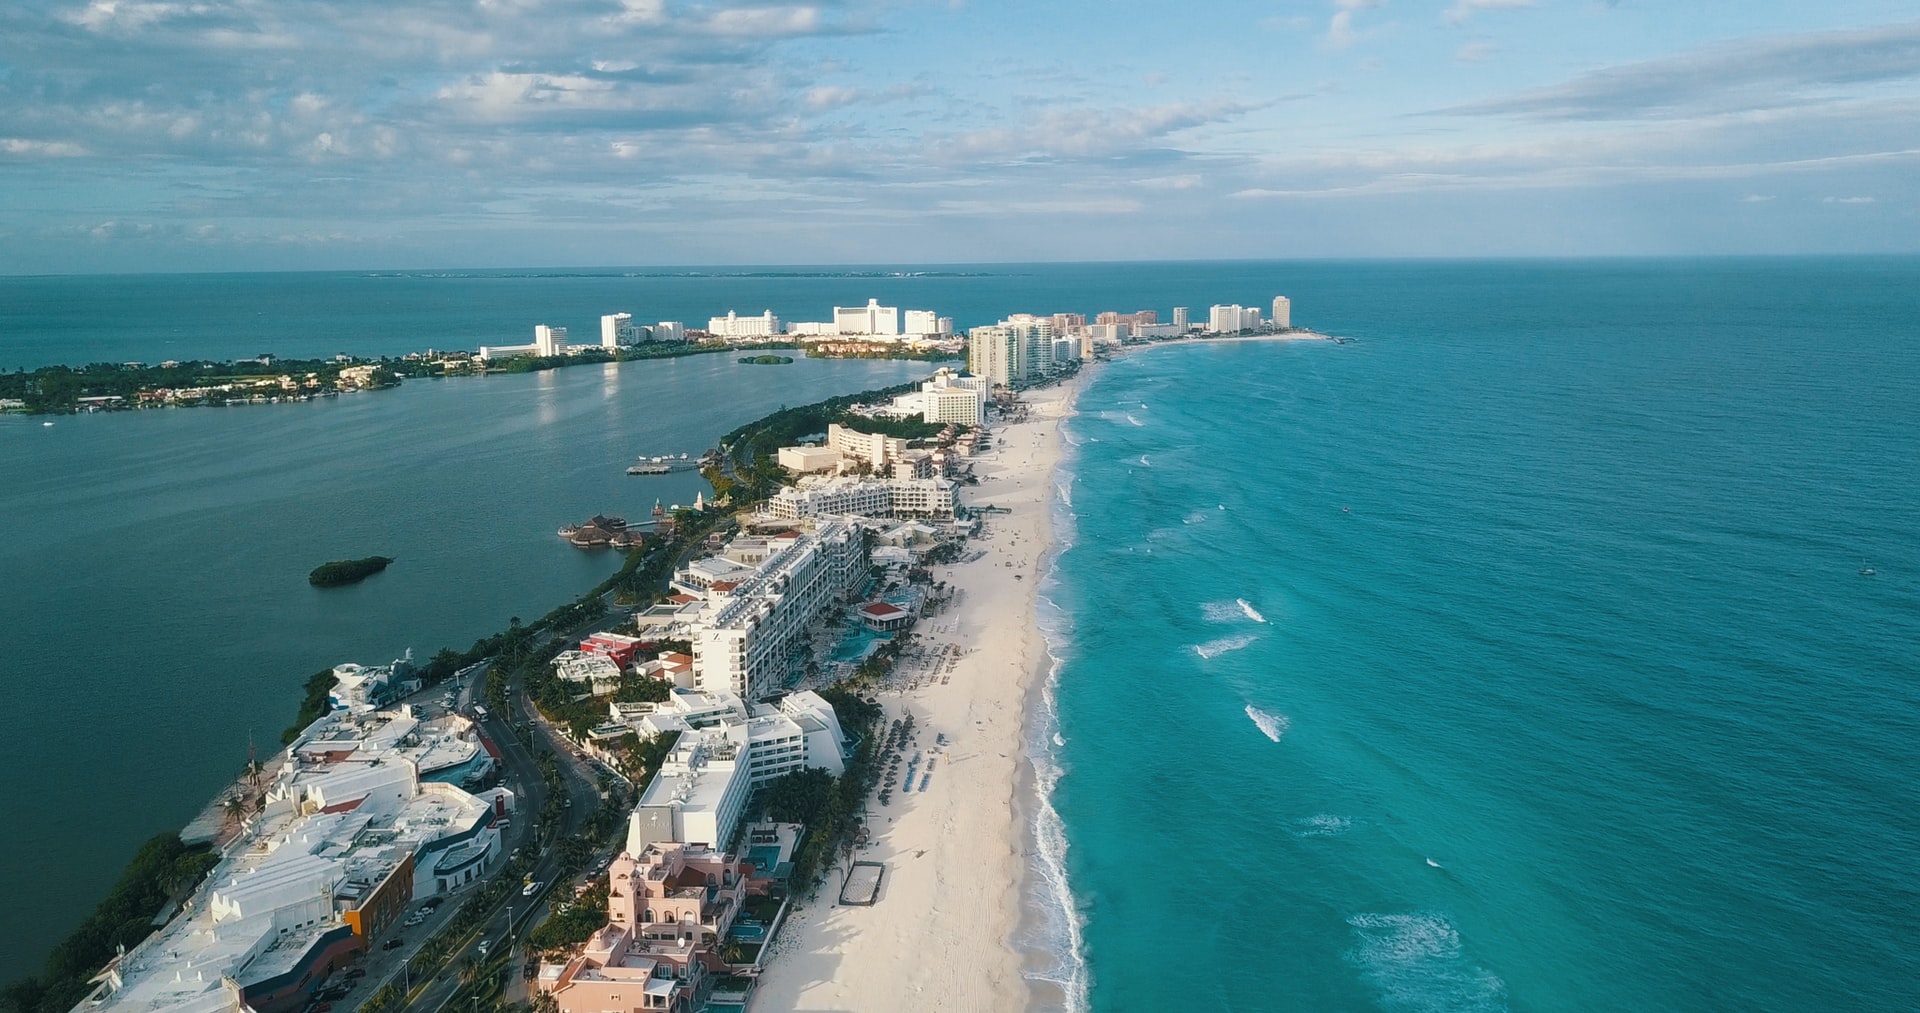 Cancun from the air, a strip of beach